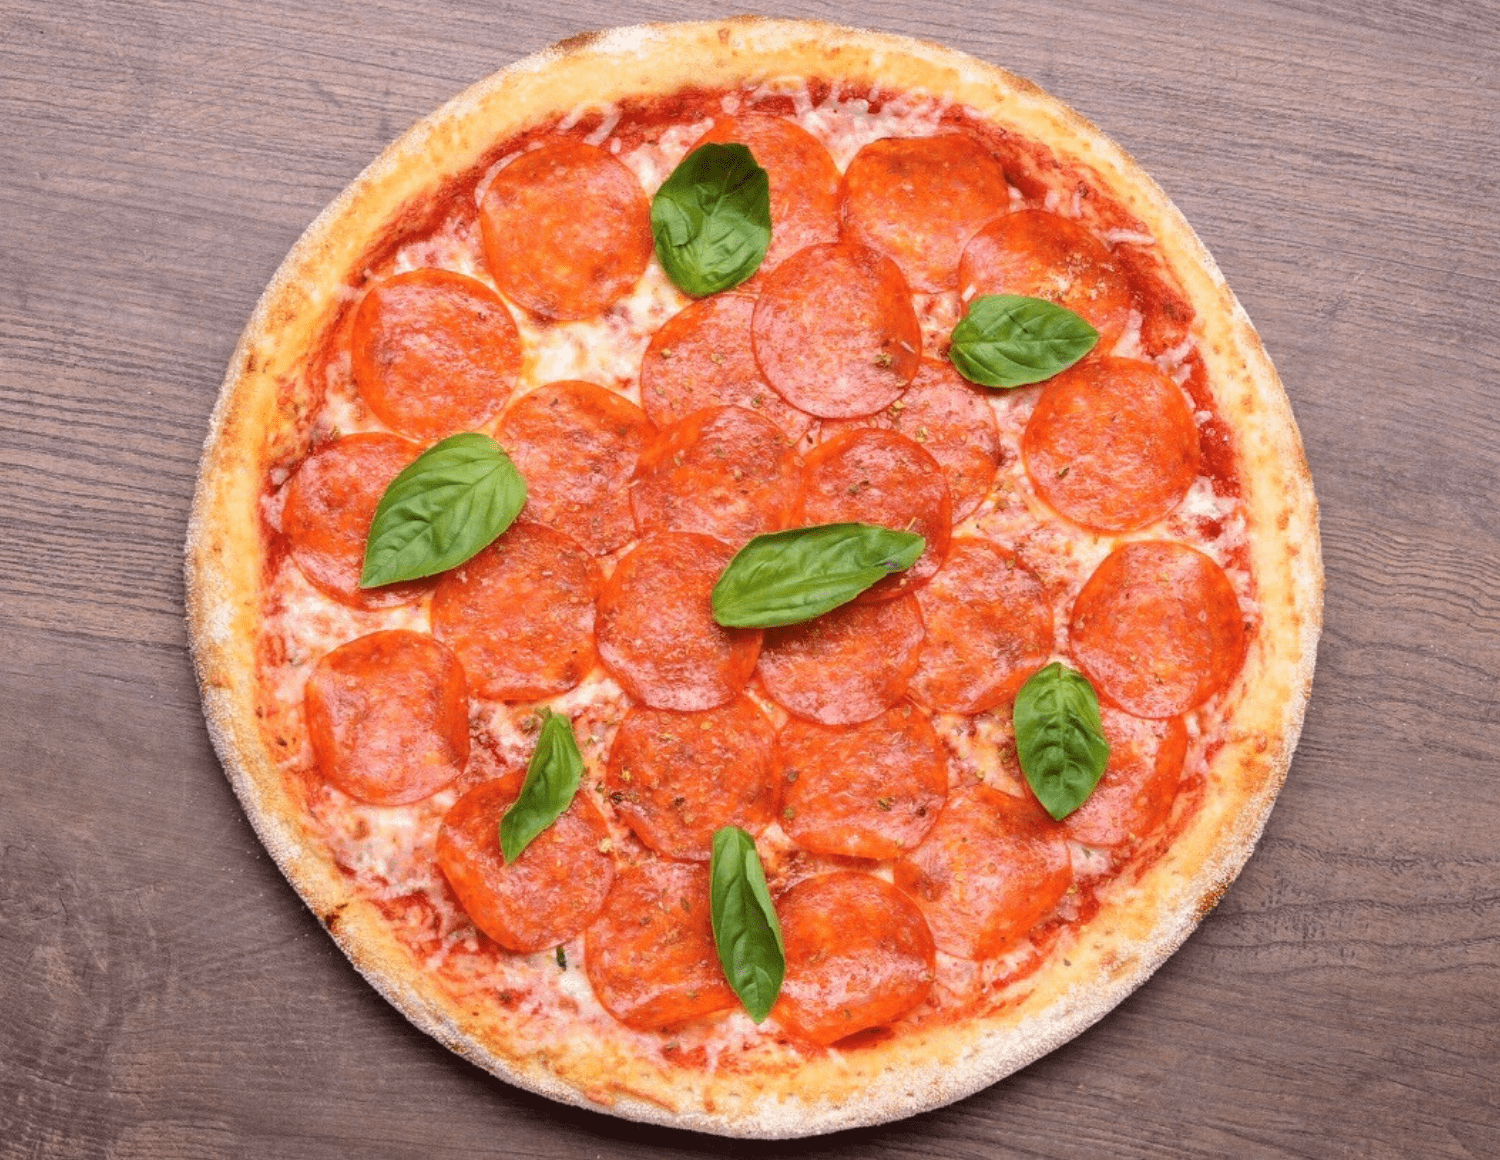 фото пепперони пицца как выглядит фото 115